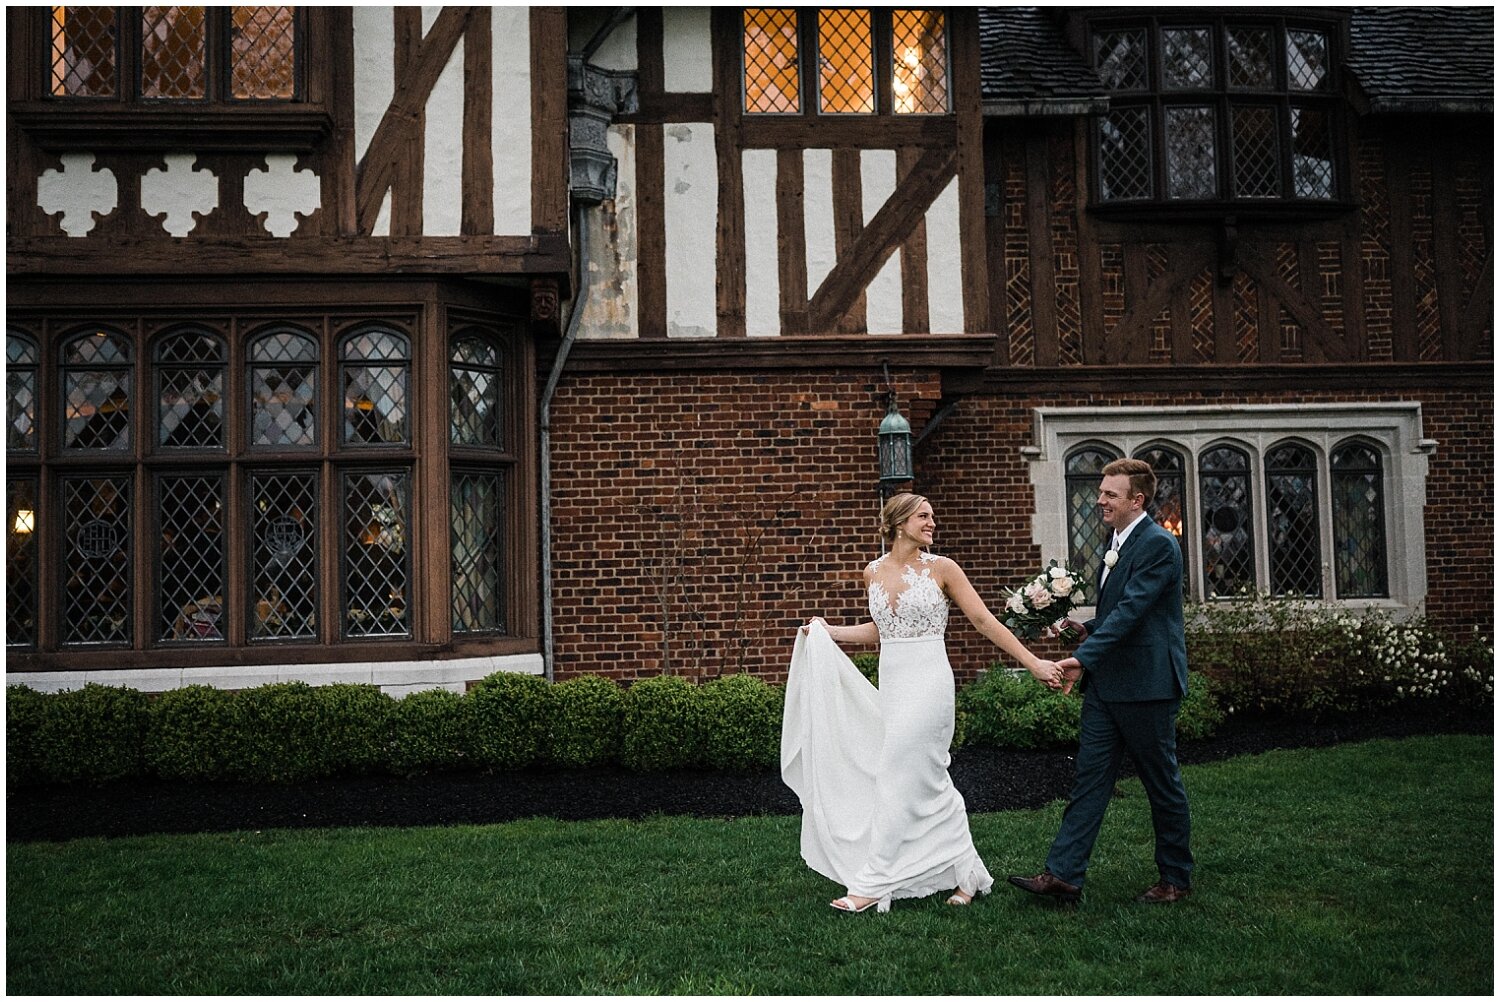 Pinecroft Mansion at Crosley Estate Wedding | Cincinnati, Ohio